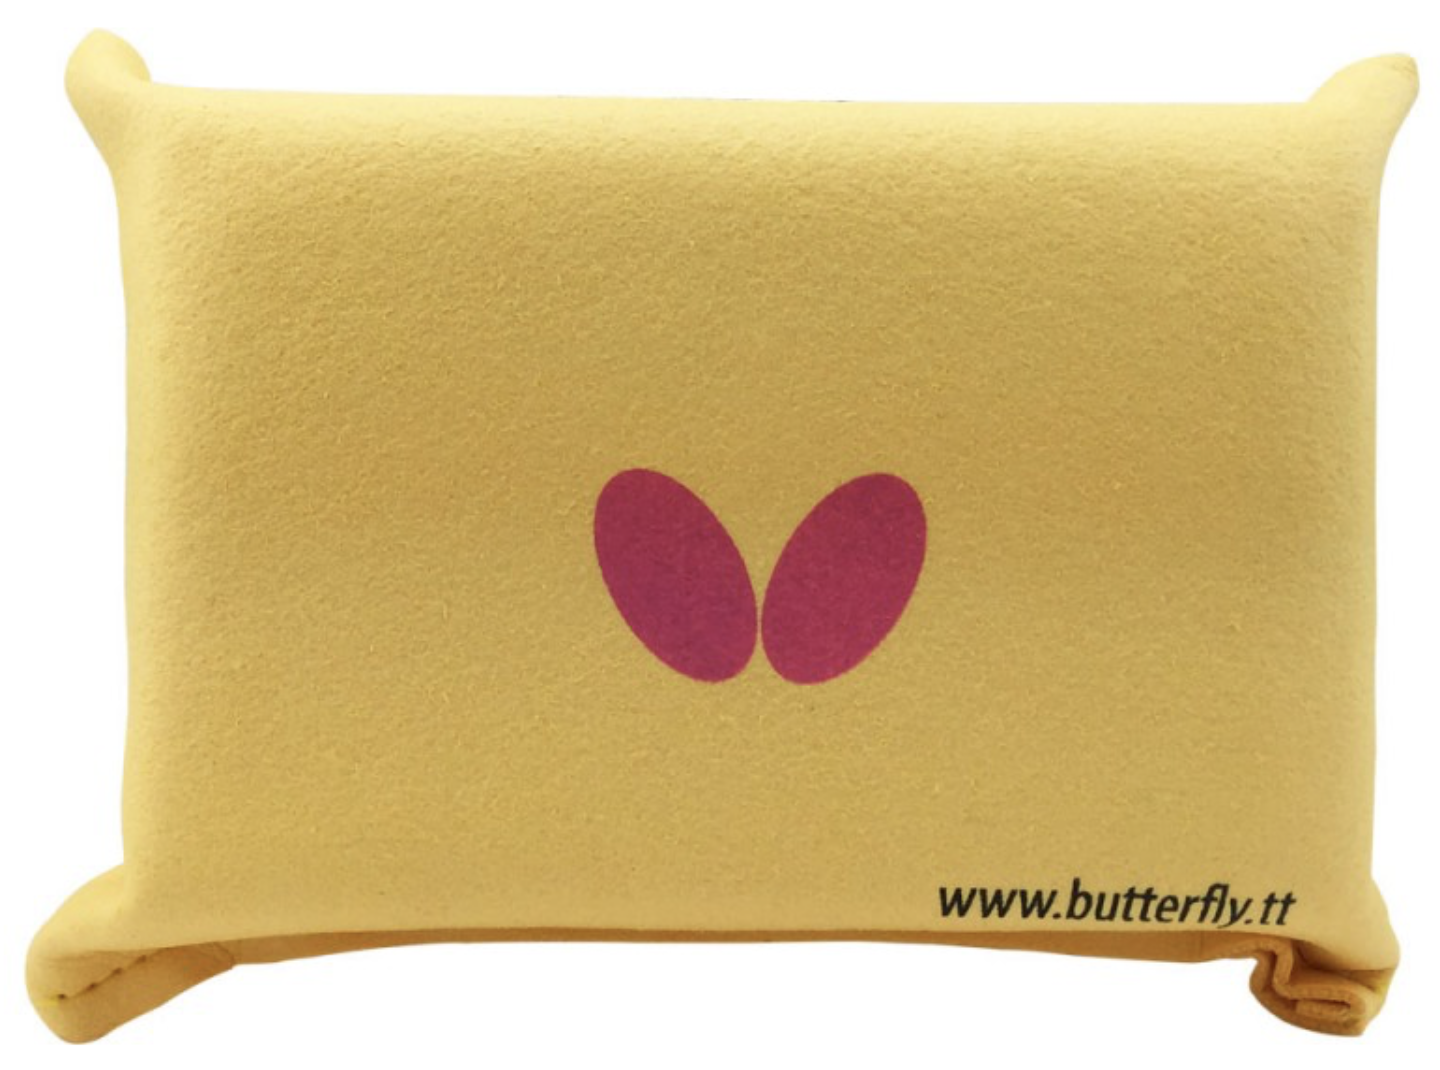 Butterfly Cotton Sponge